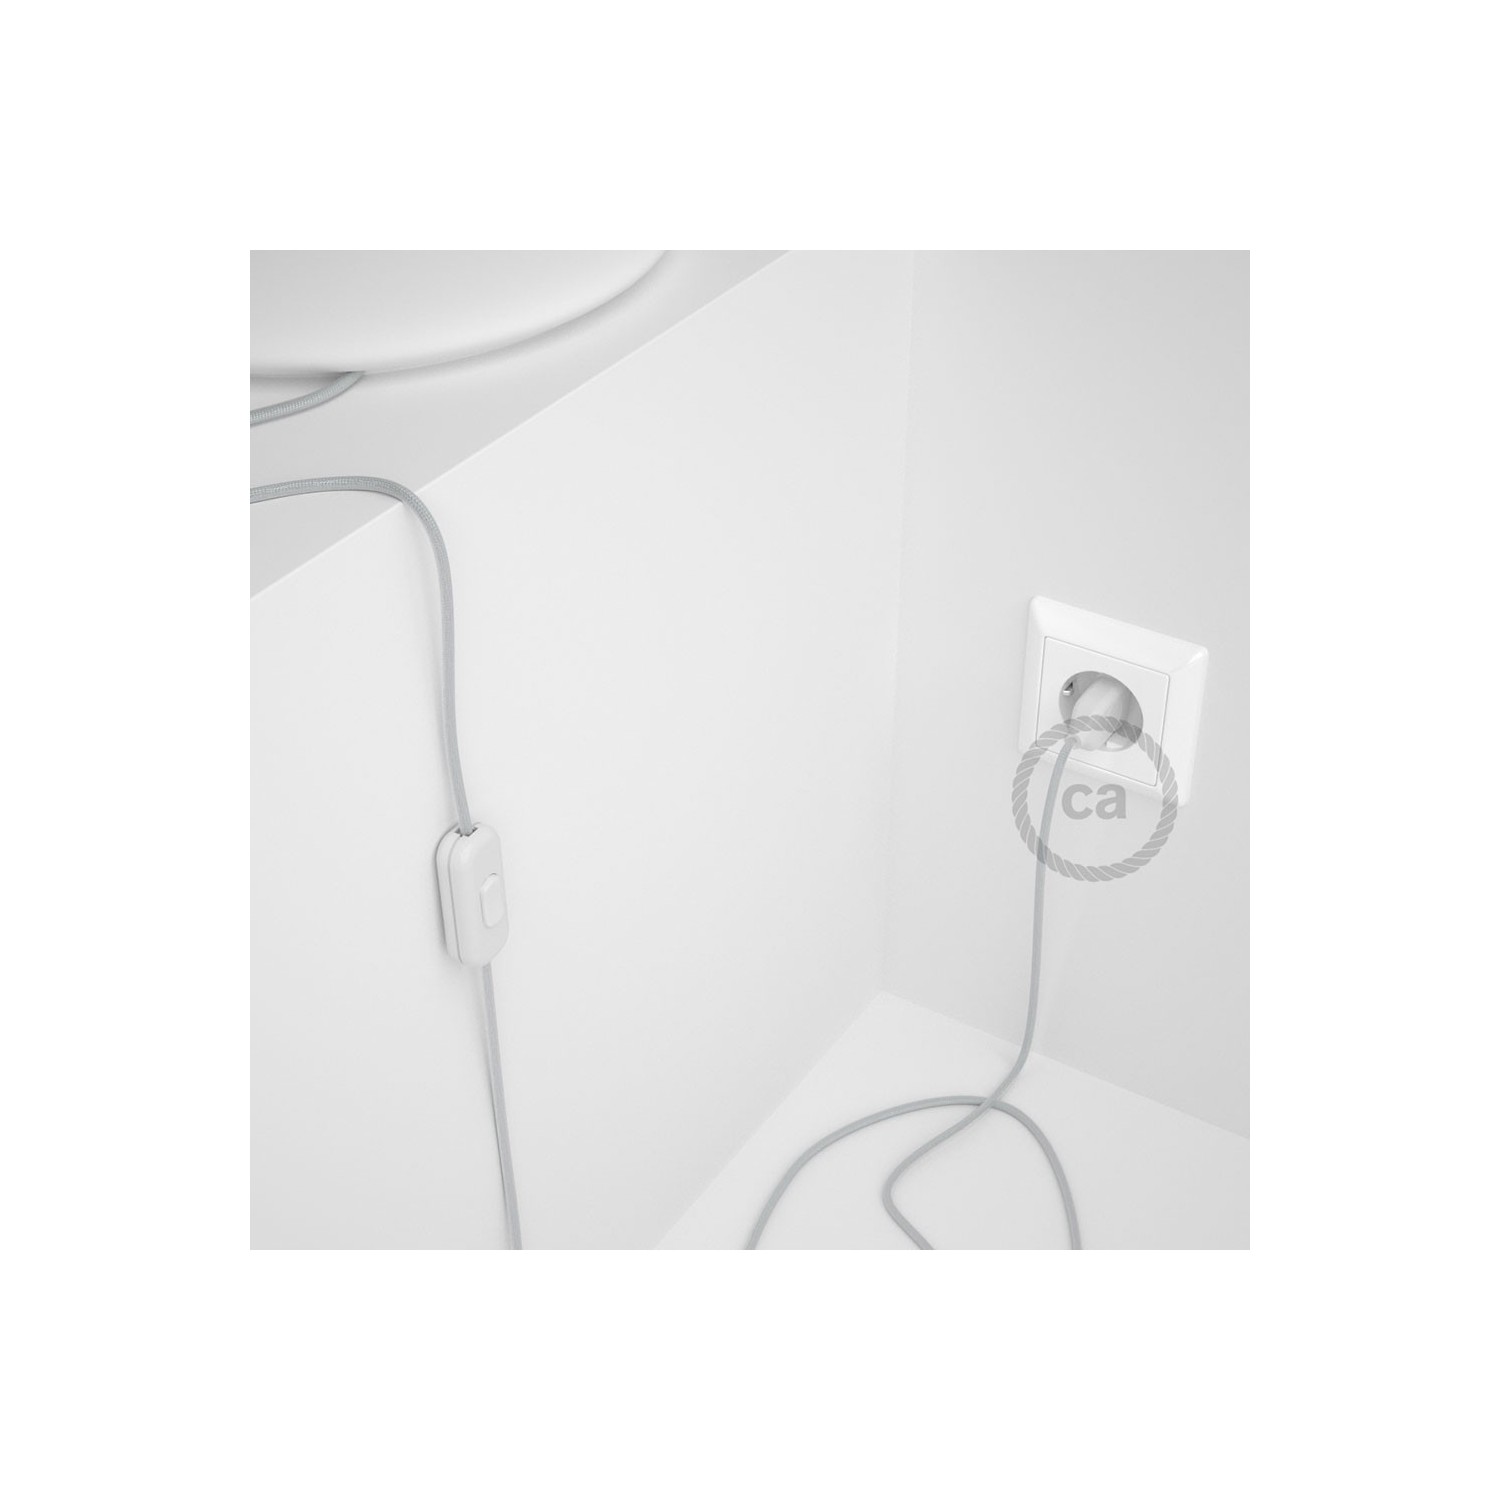 Cordon pour lampe, câble RM02 Effet Soie Argent 1,80 m. Choisissez la couleur de la fiche et de l'interrupteur!